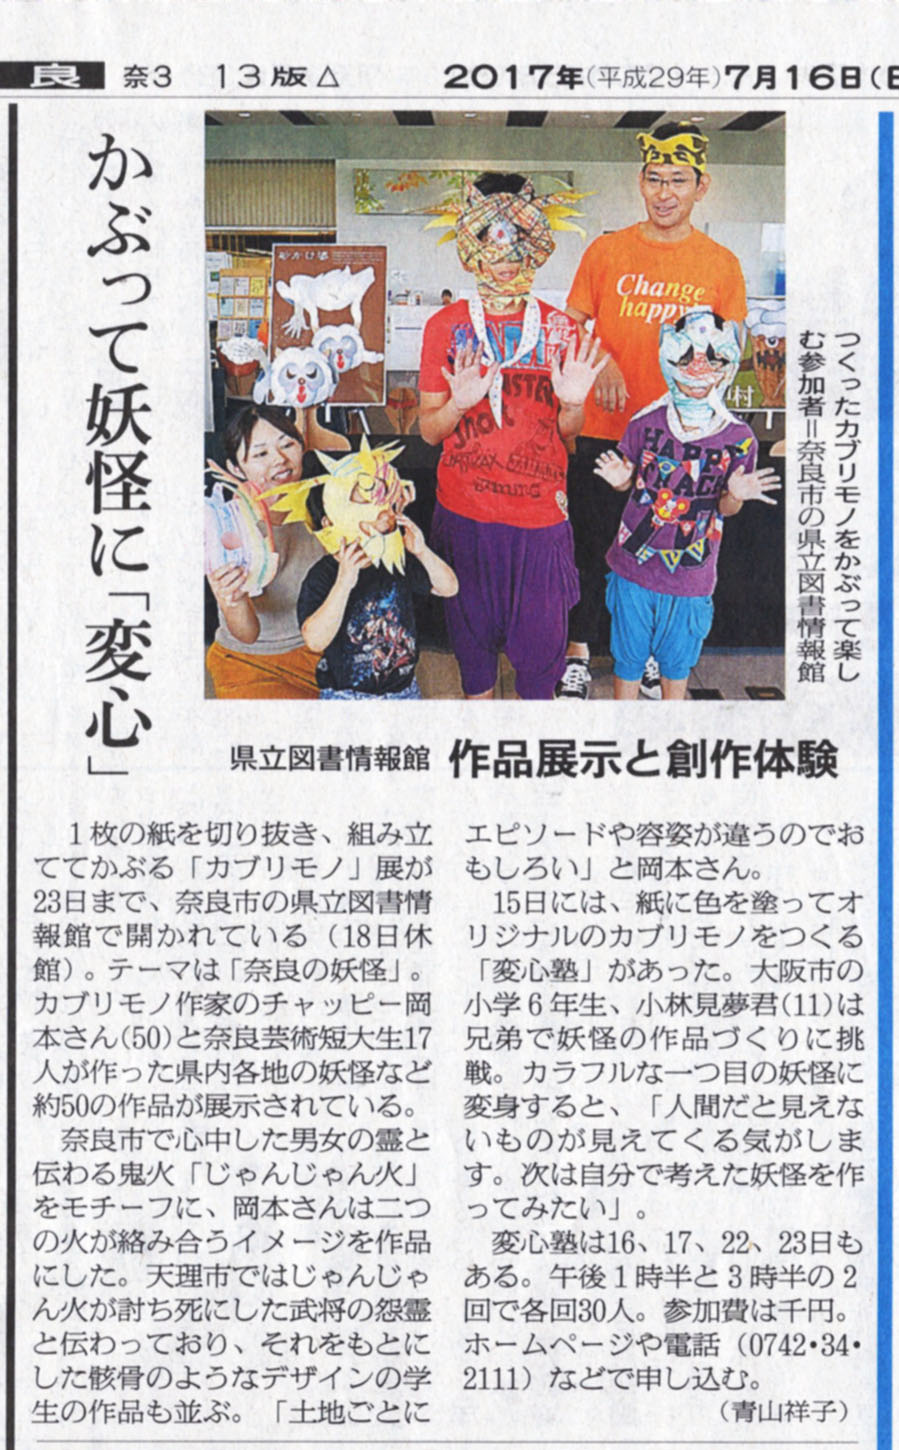 奈良の妖怪カブリモノ展の朝日新聞掲載分